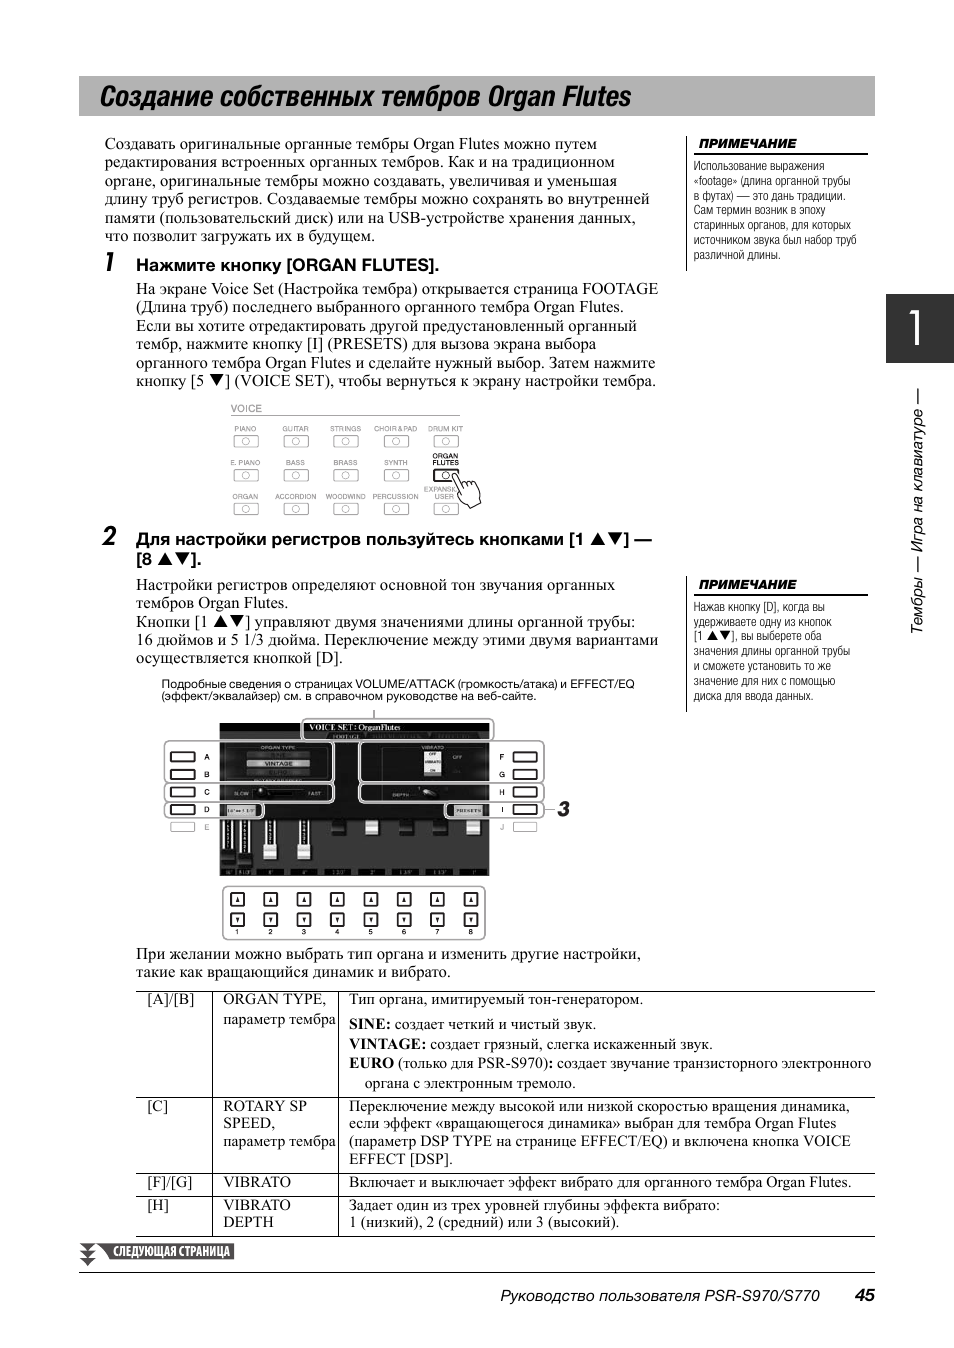 Создание собственных тембров organ flutes | Инструкция по эксплуатации Yamaha PSR-S770 | Страница 45 / 116